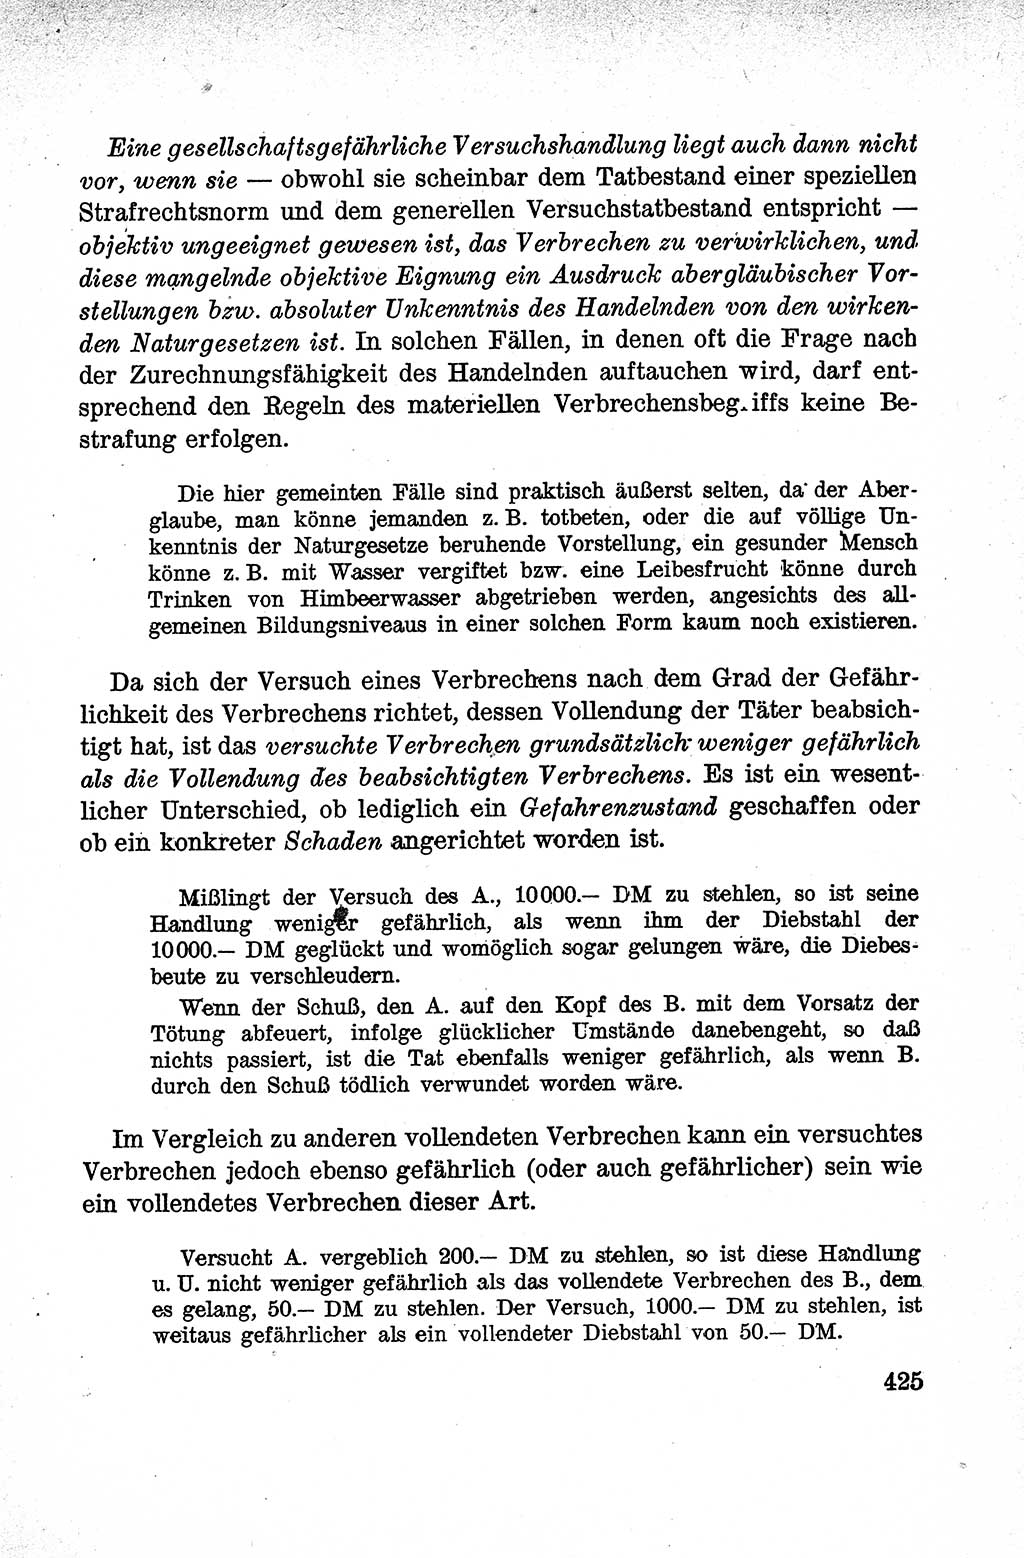 Lehrbuch des Strafrechts der Deutschen Demokratischen Republik (DDR), Allgemeiner Teil 1959, Seite 425 (Lb. Strafr. DDR AT 1959, S. 425)